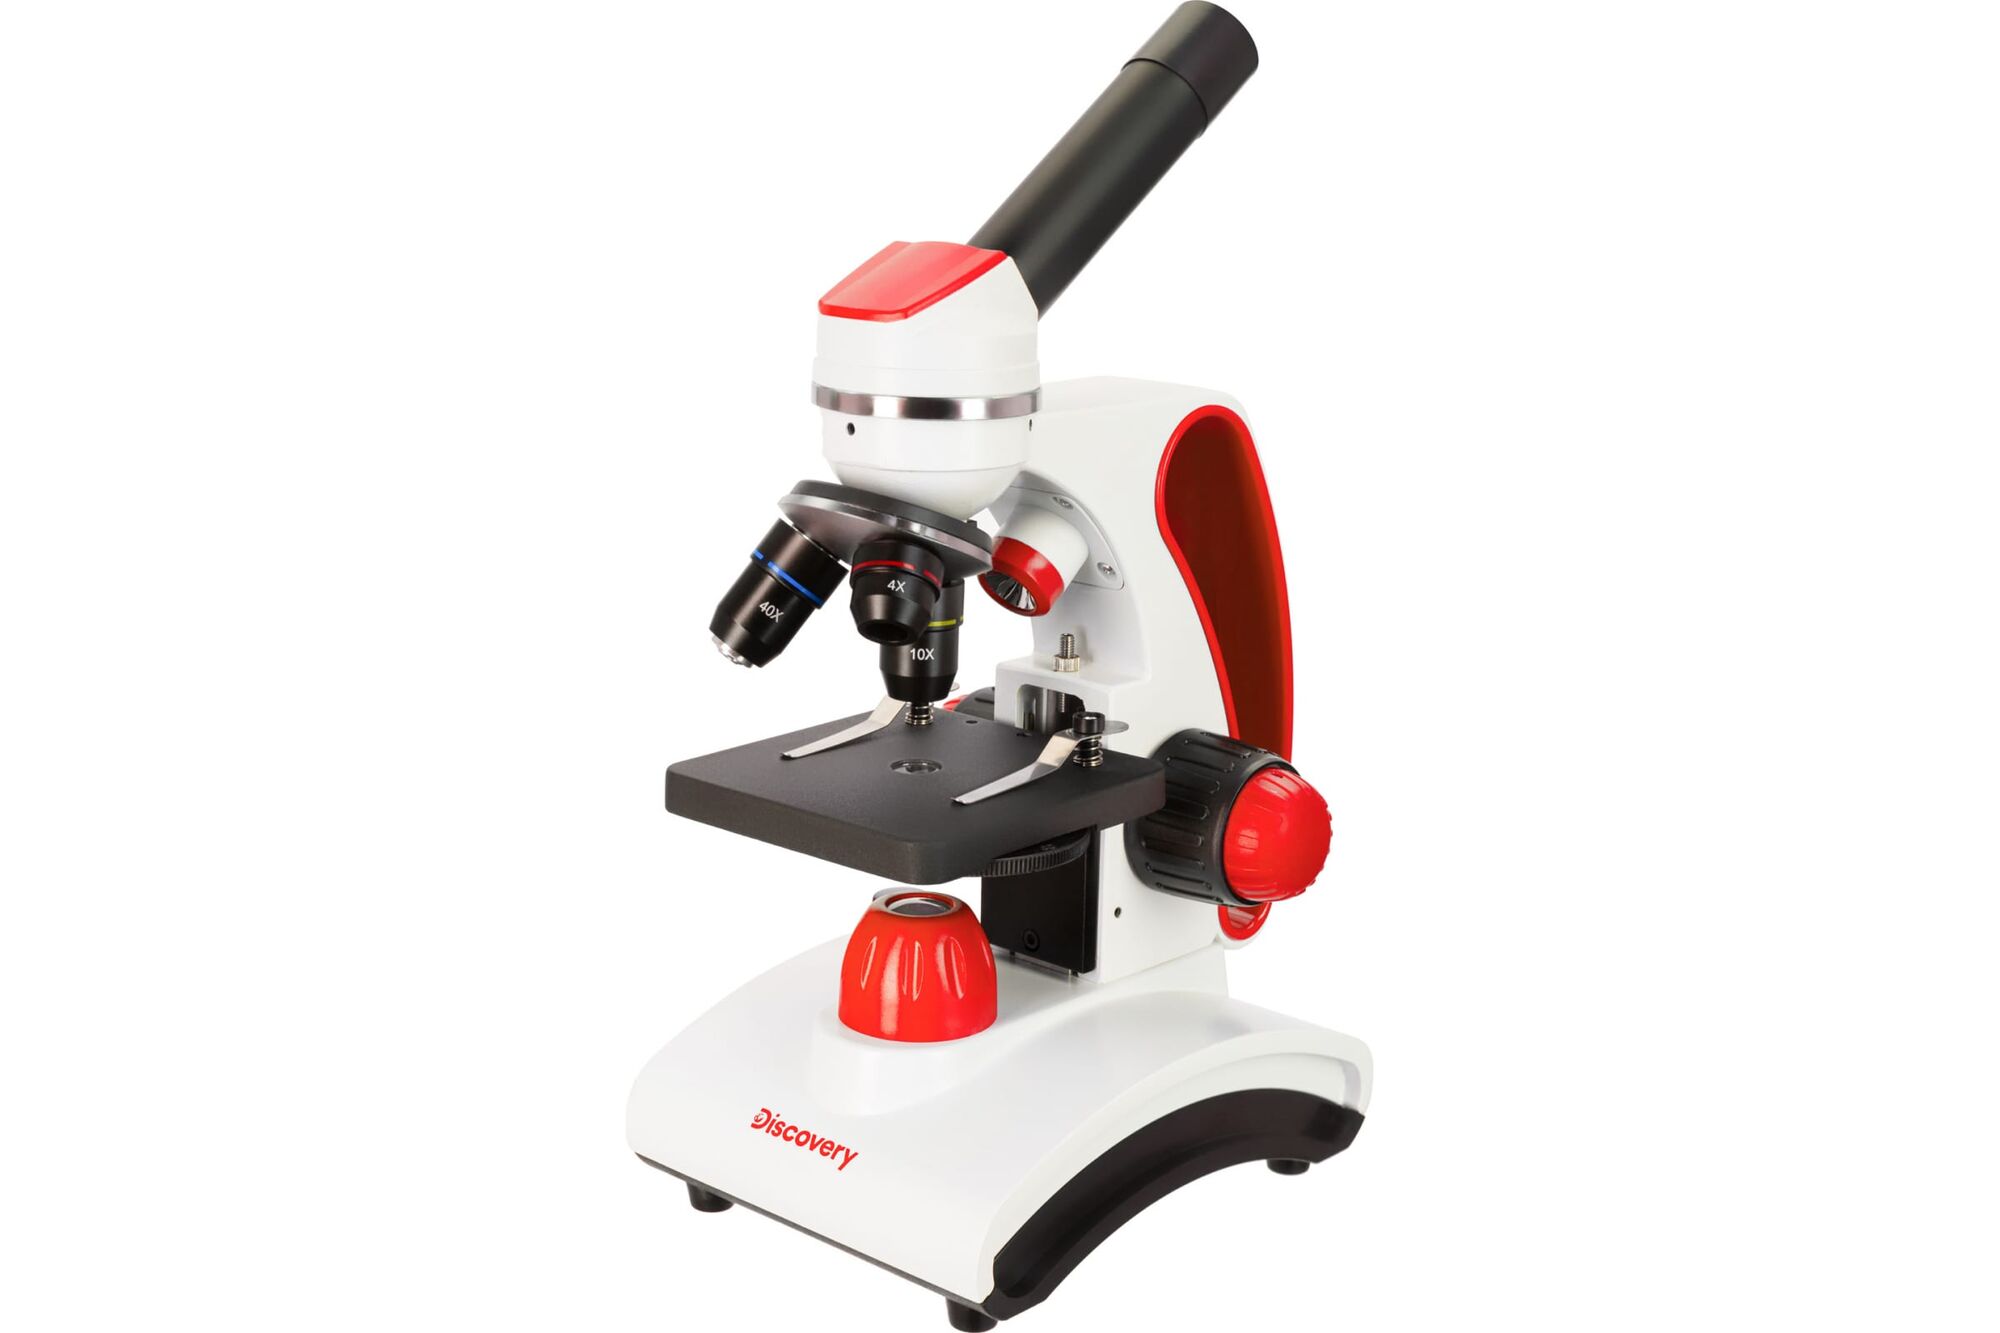 Микроскоп Discovery Pico Terra с книгой 77974